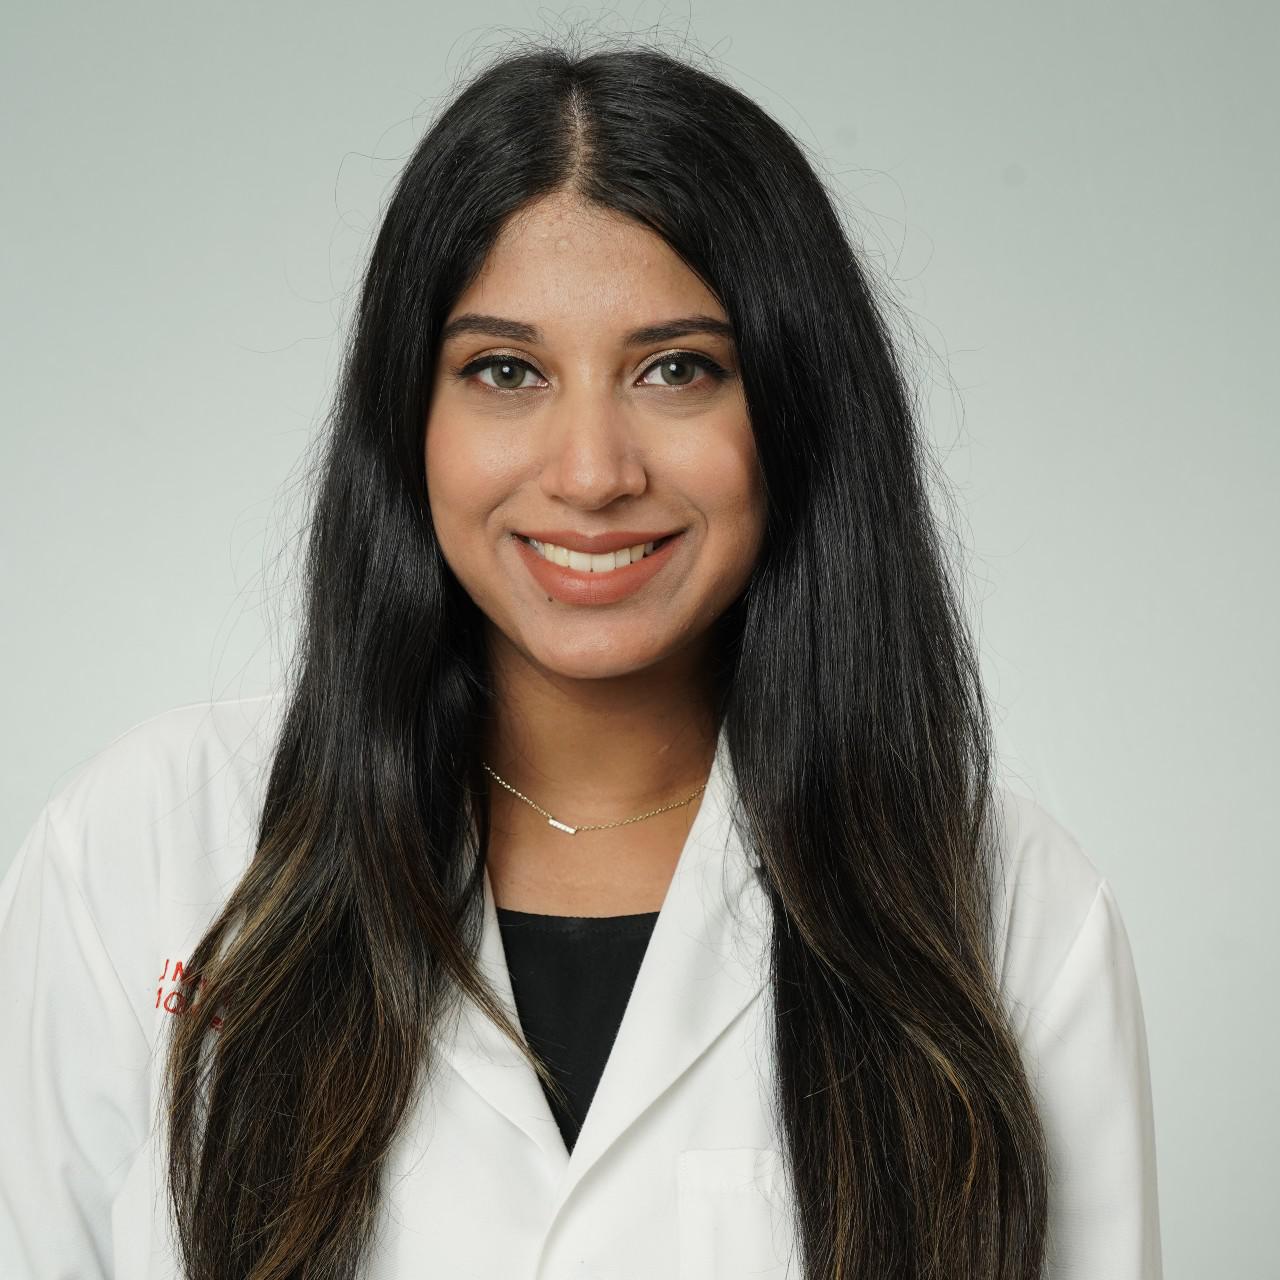 Dr. Saffa Ahmad, MD